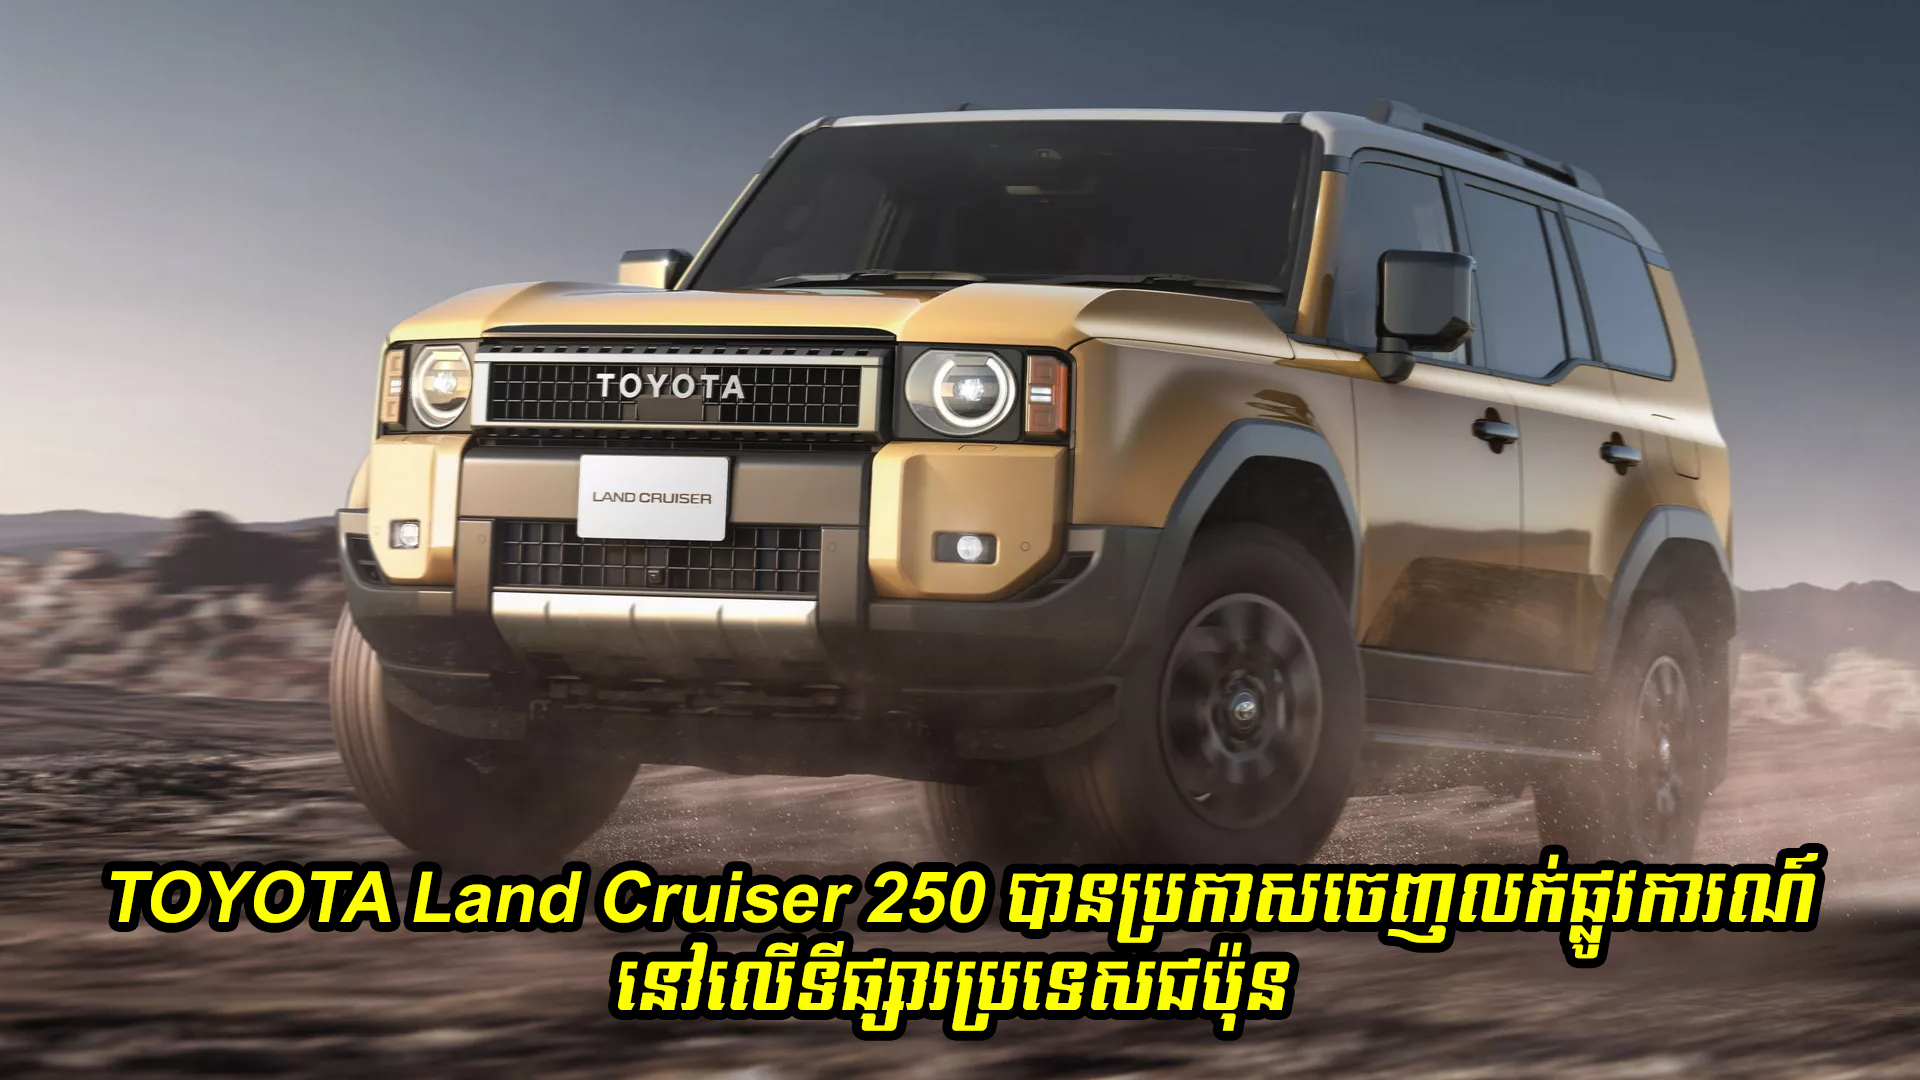 រថយន្តស៊េរីថ្មី TOYOTA Land Cruiser 250 បានប្រកាសចេញលក់ផ្លូវការណ៍នៅទីផ្សារប្រទេសជប៉ុន